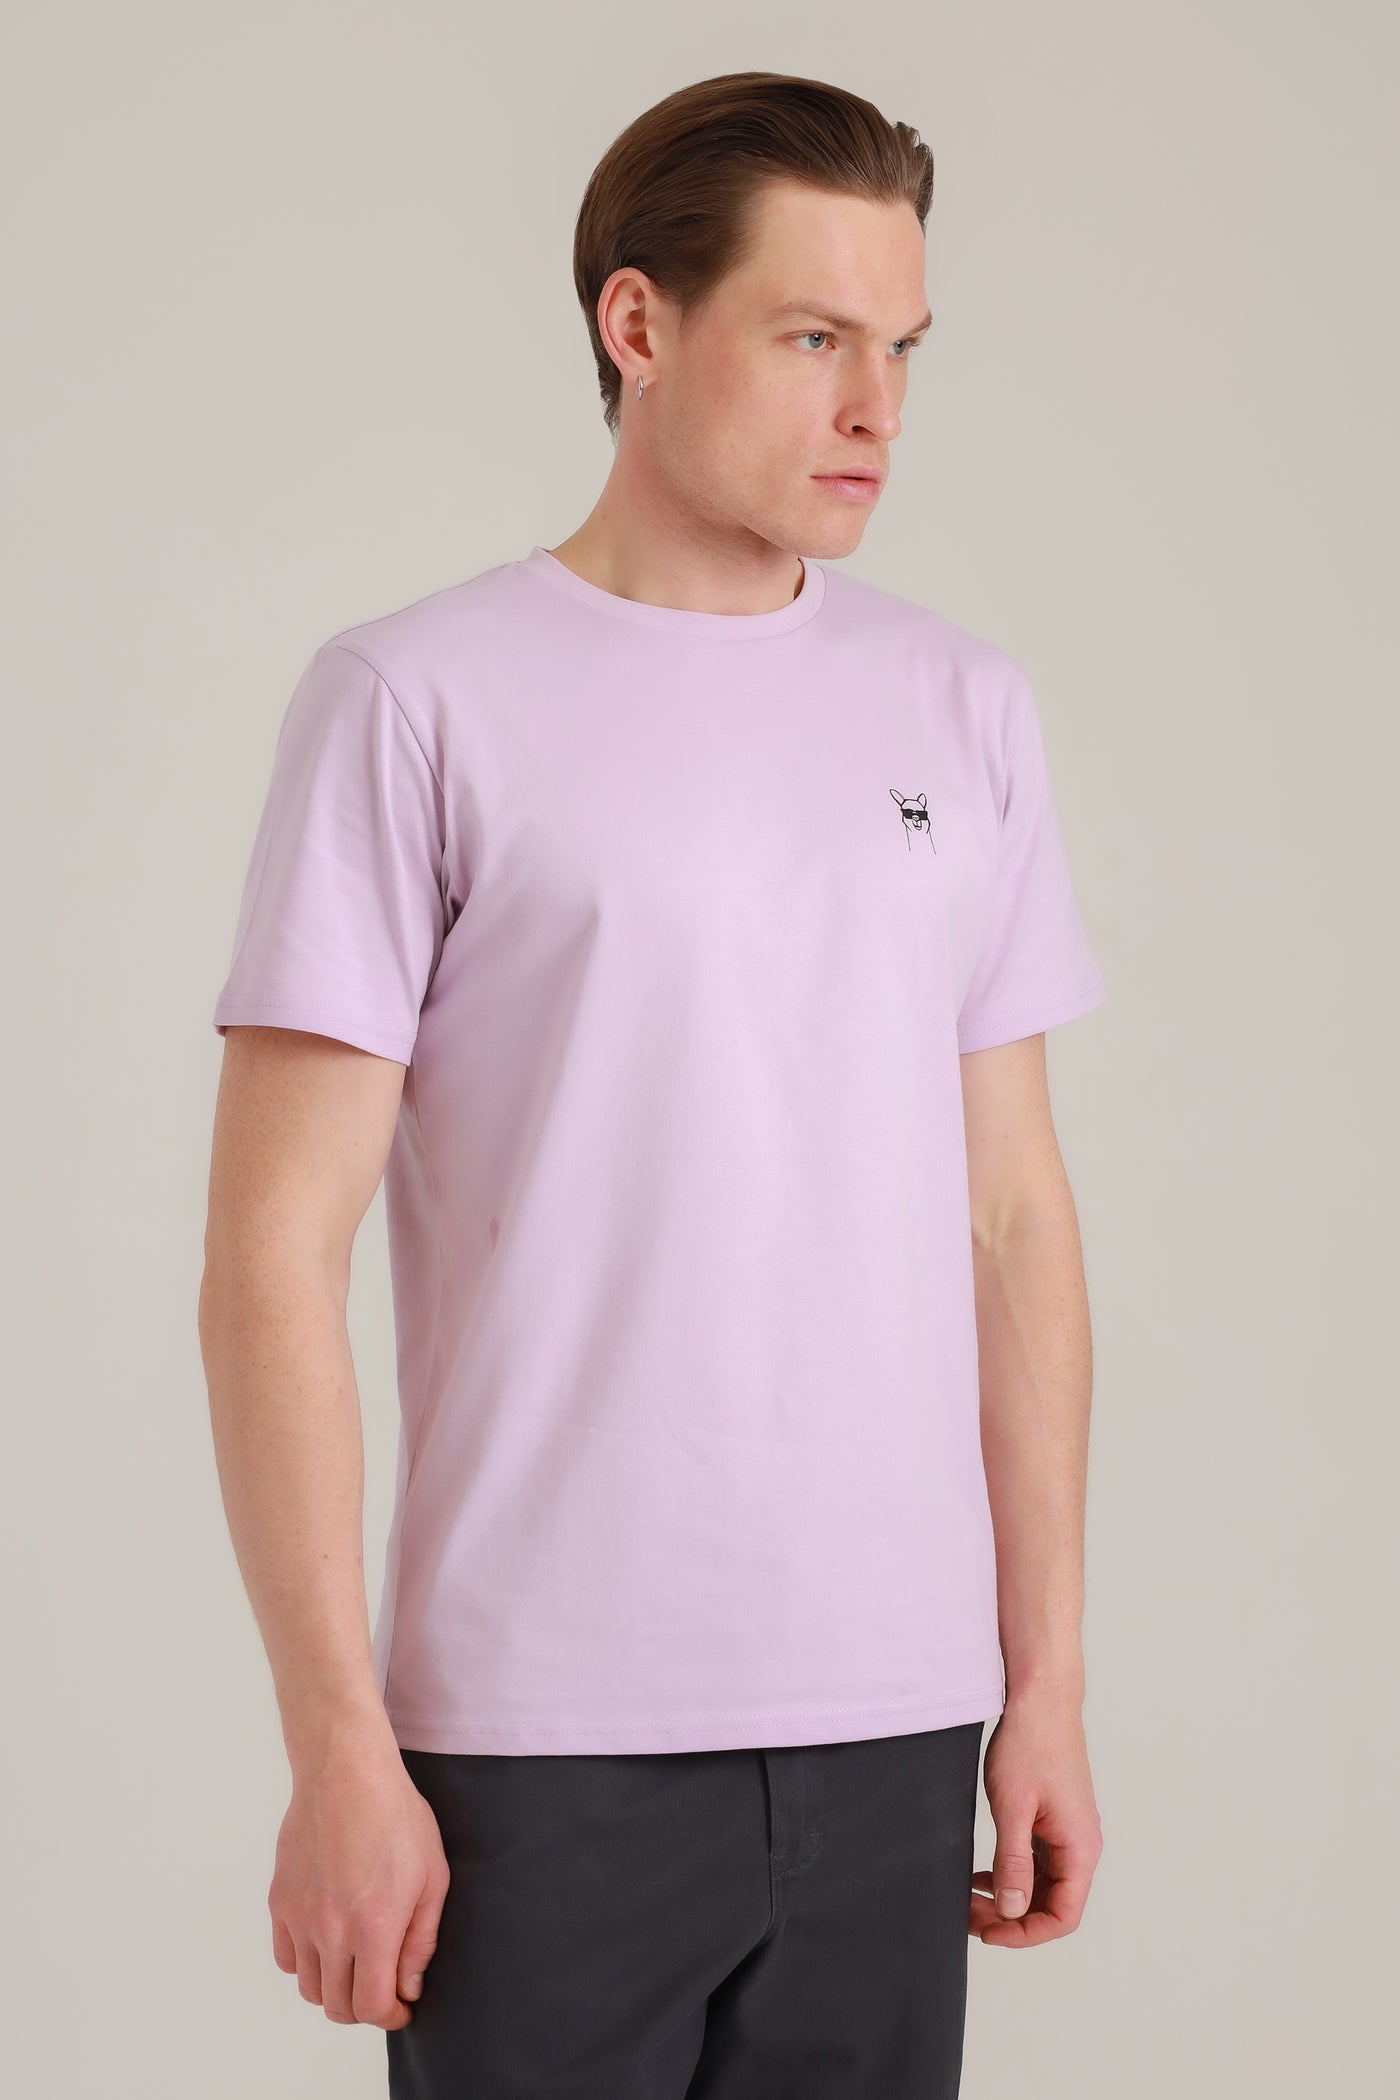 T-Shirt Men Cool Paka Lavender